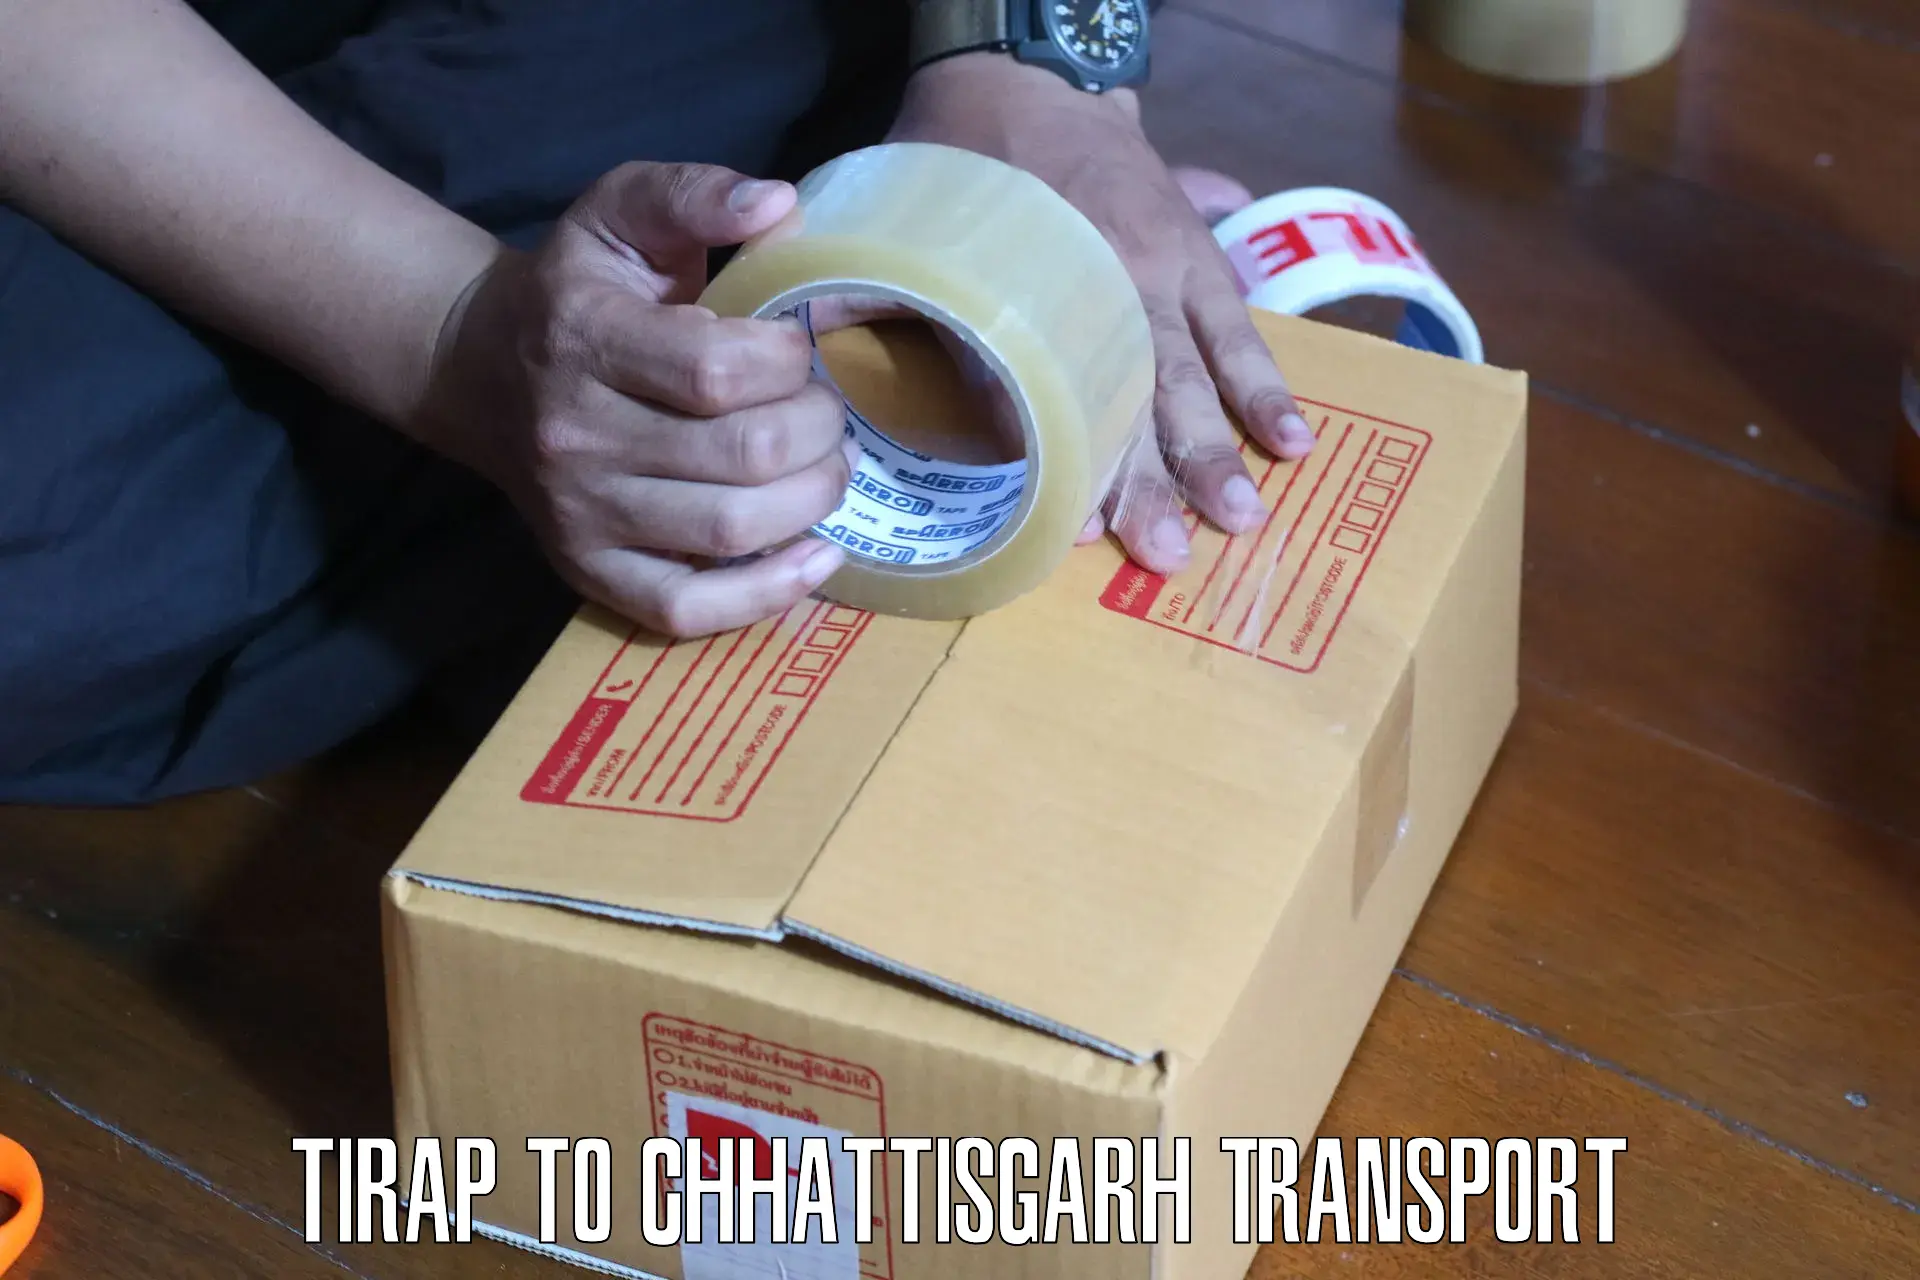 Container transport service Tirap to Korea Chhattisgarh